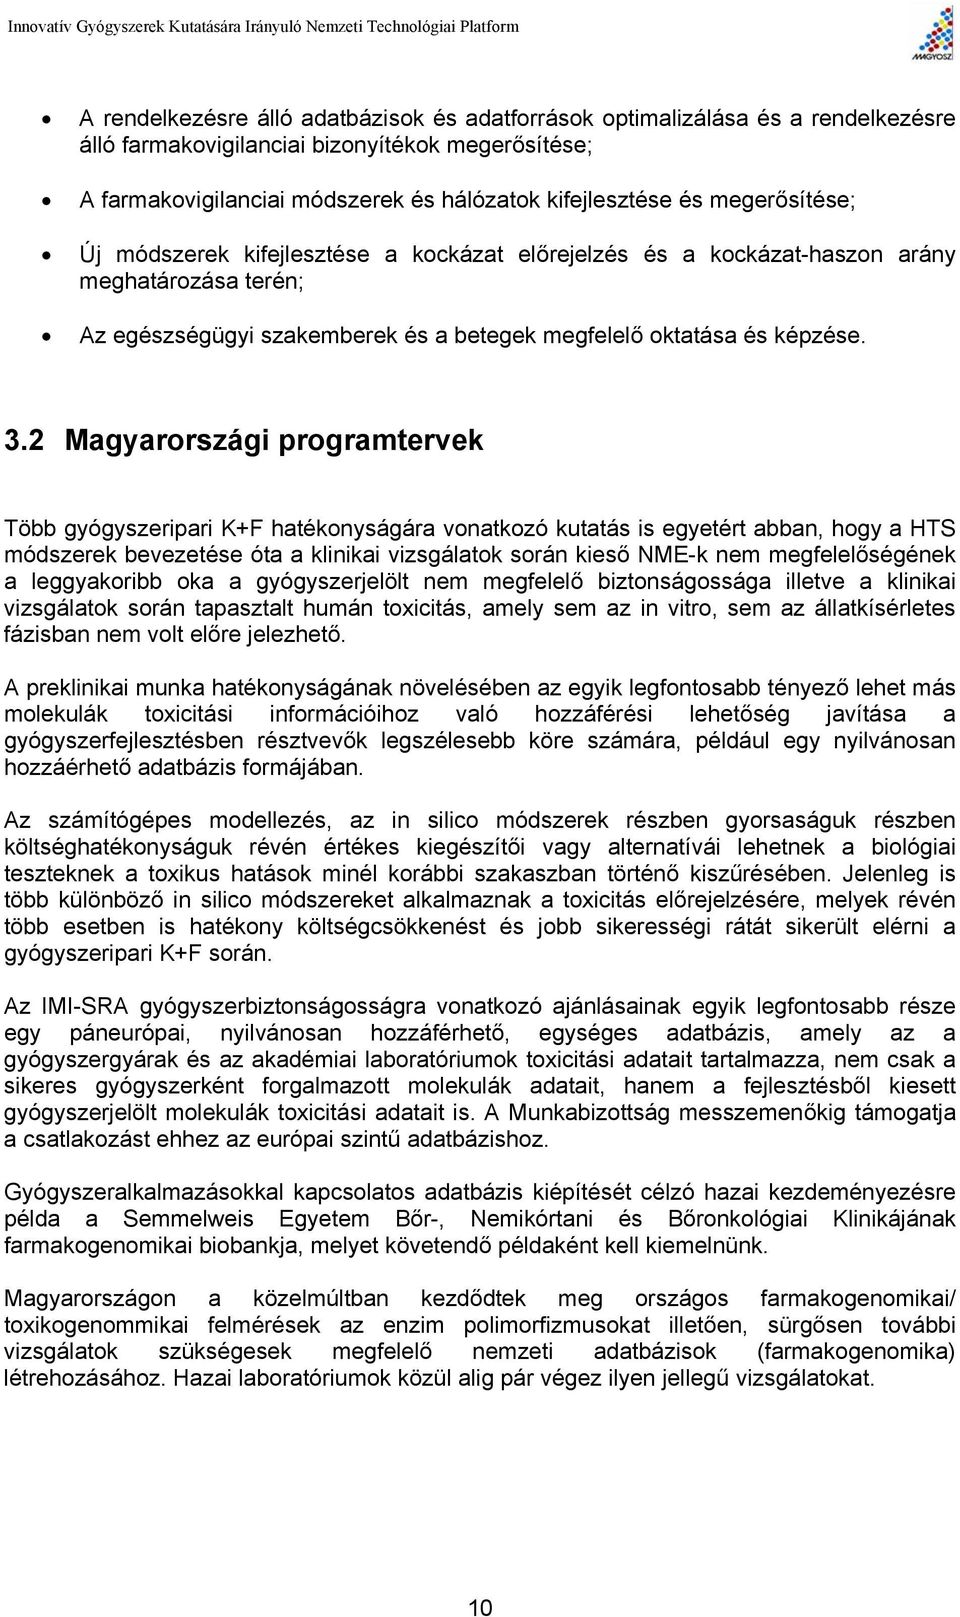 2 Magyarországi programtervek Több gyógyszeripari K+F hatékonyságára vonatkozó kutatás is egyetért abban, hogy a HTS módszerek bevezetése óta a klinikai vizsgálatok során kieső NME-k nem